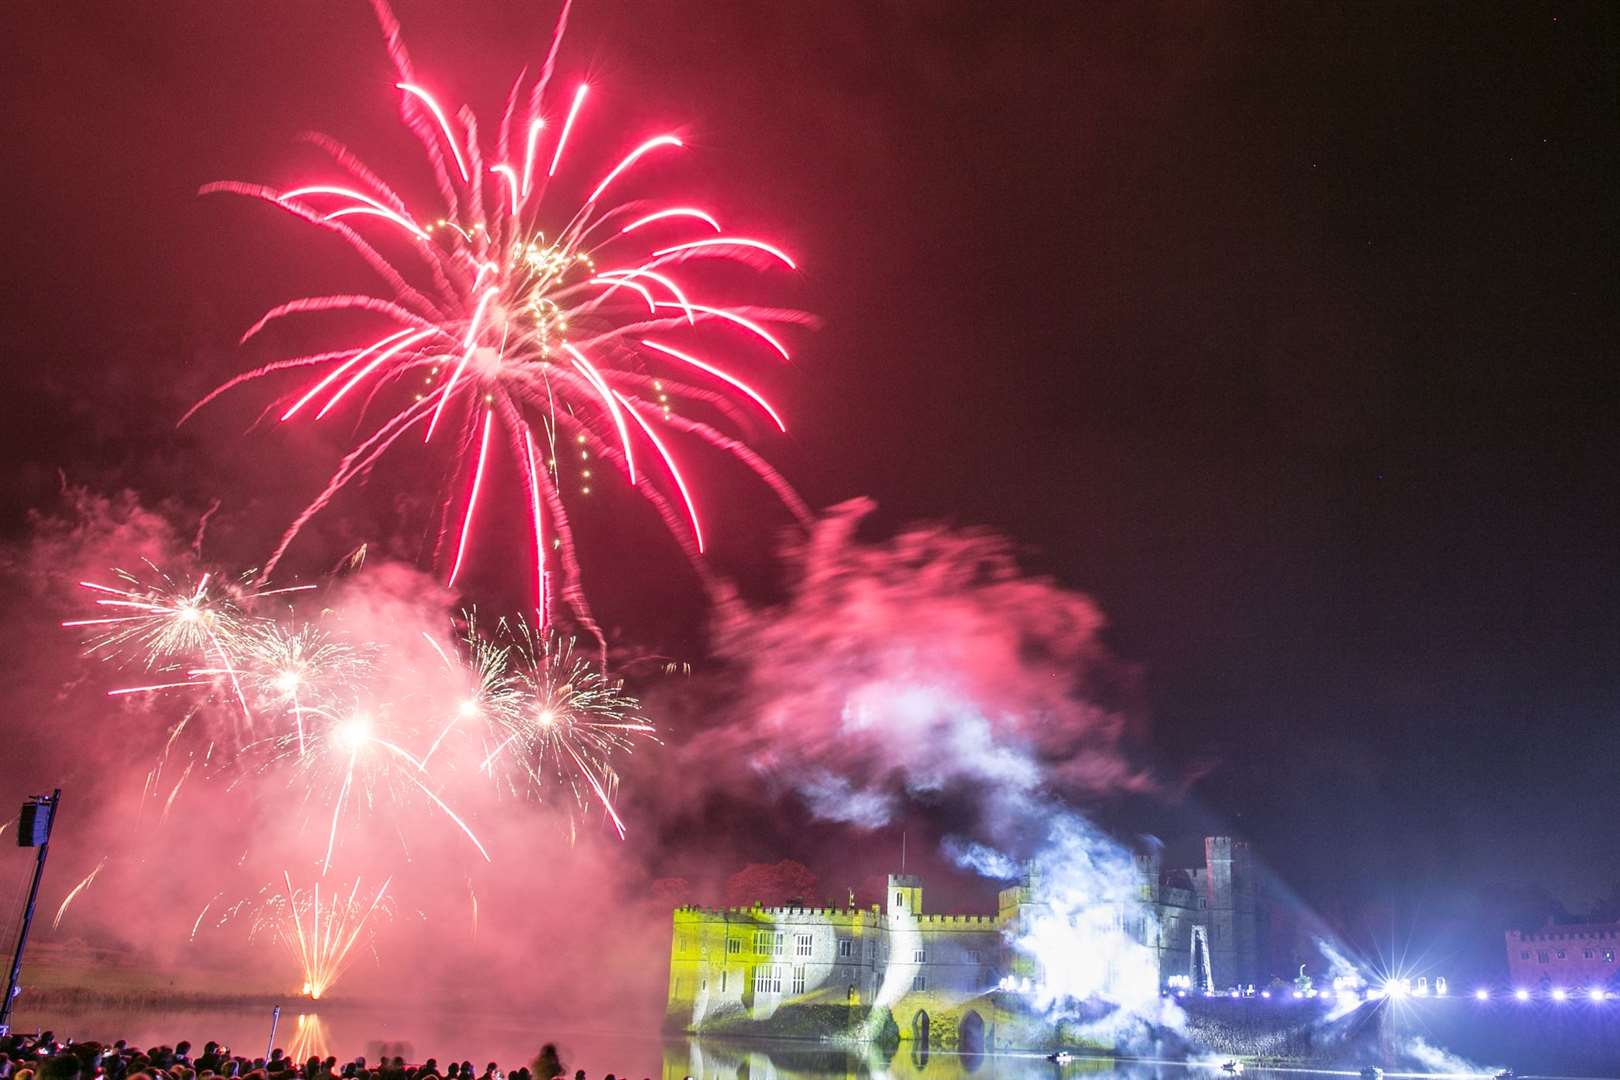 Leeds Castle Fireworks 2019 sponsored by KMFM. Picture: Matthew Walker.